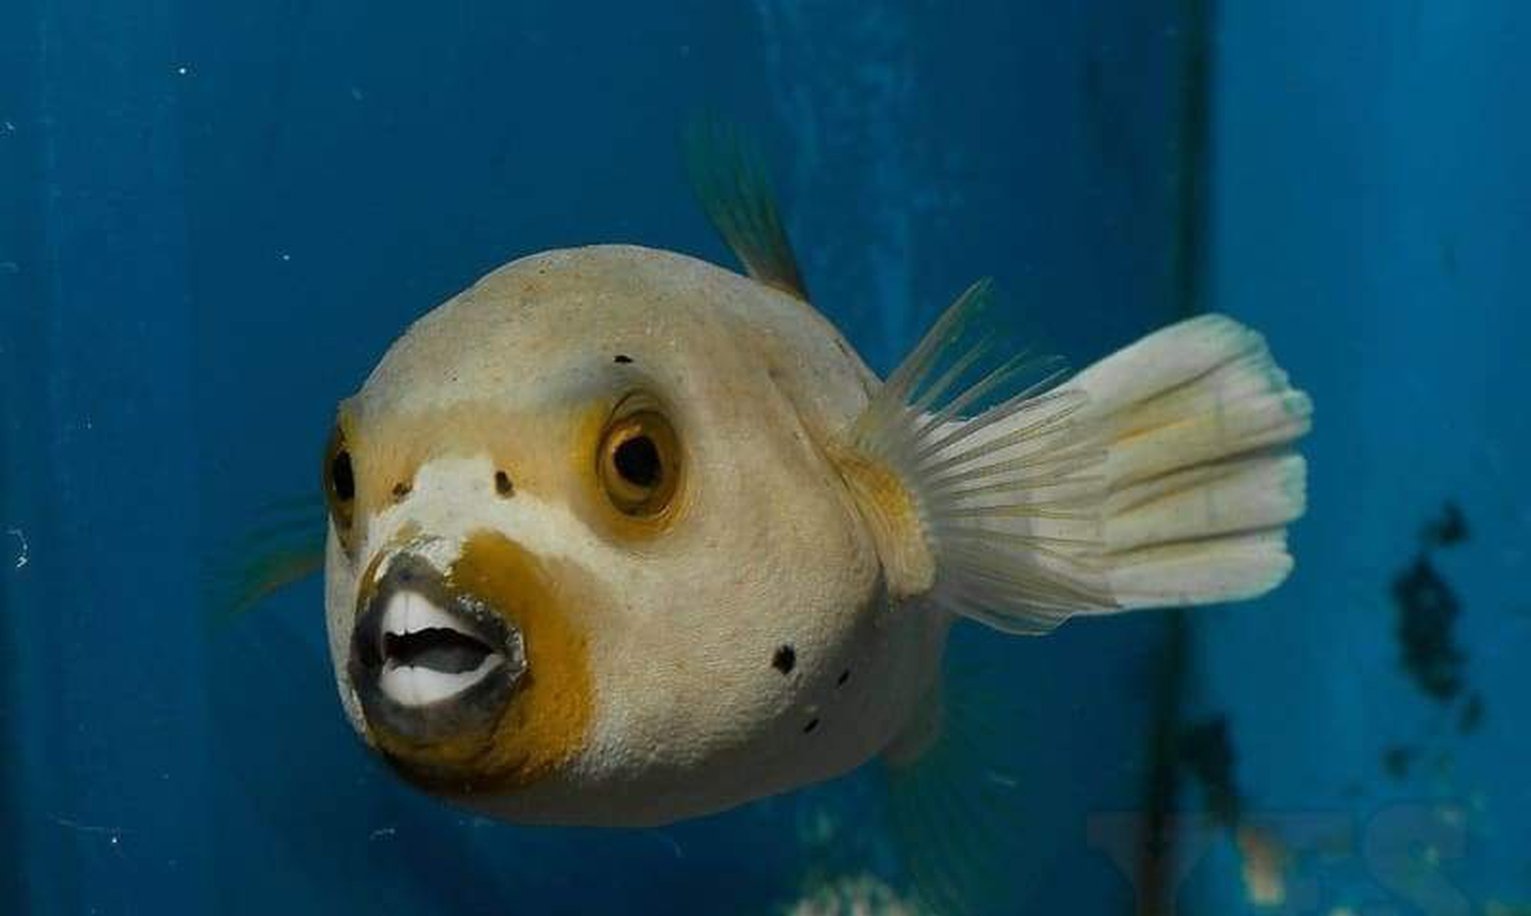 Dogface Puffer Fish - Medium 3" - 4" - Arothron Nigropunctatus-marine fish packages-www.YourFishStore.com